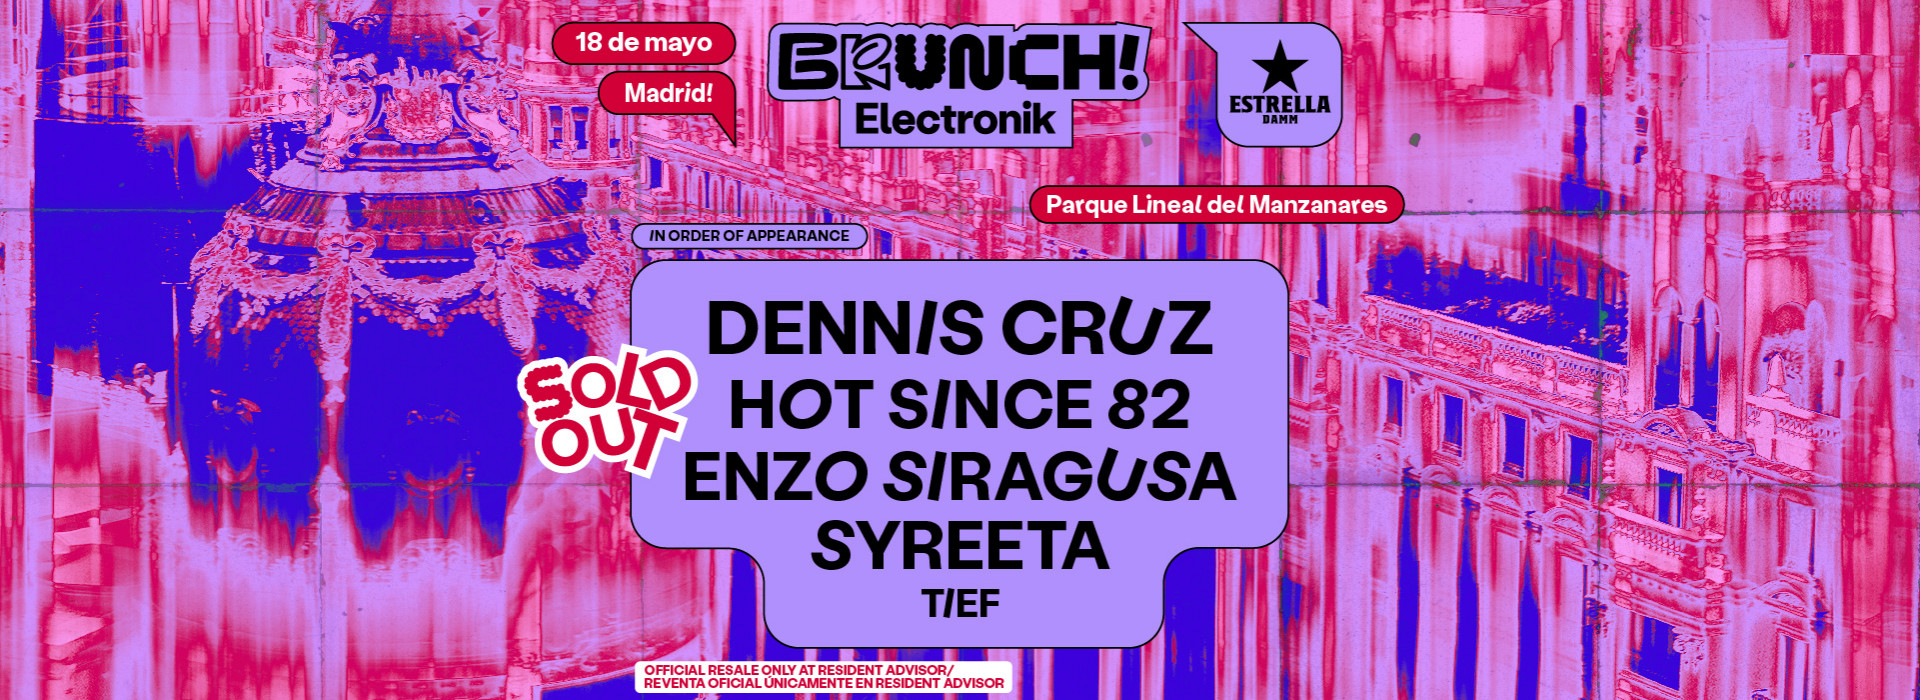 Brunch Electronik Madrid #3: Dennis Cruz, Hot Since 82, Enzo Siragusa, SYREETA y más